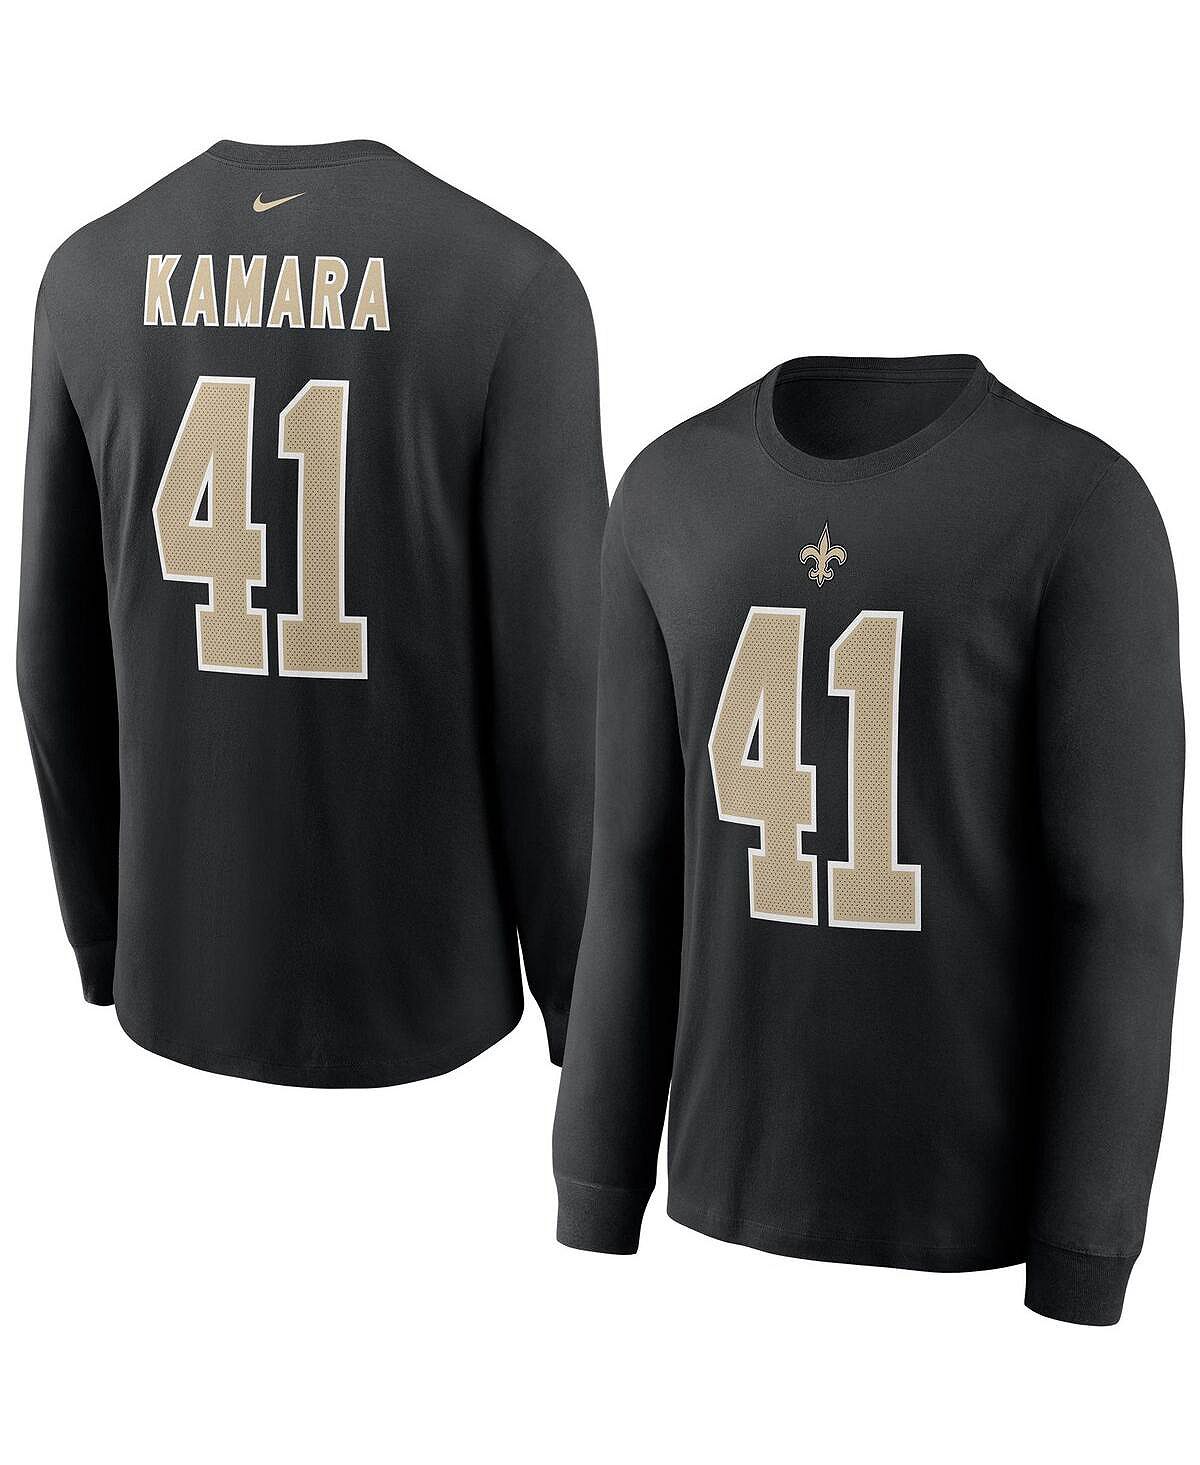 Мужская черная футболка с длинным рукавом Alvin Kamara New Orleans Saints, имя и номер игрока Nike